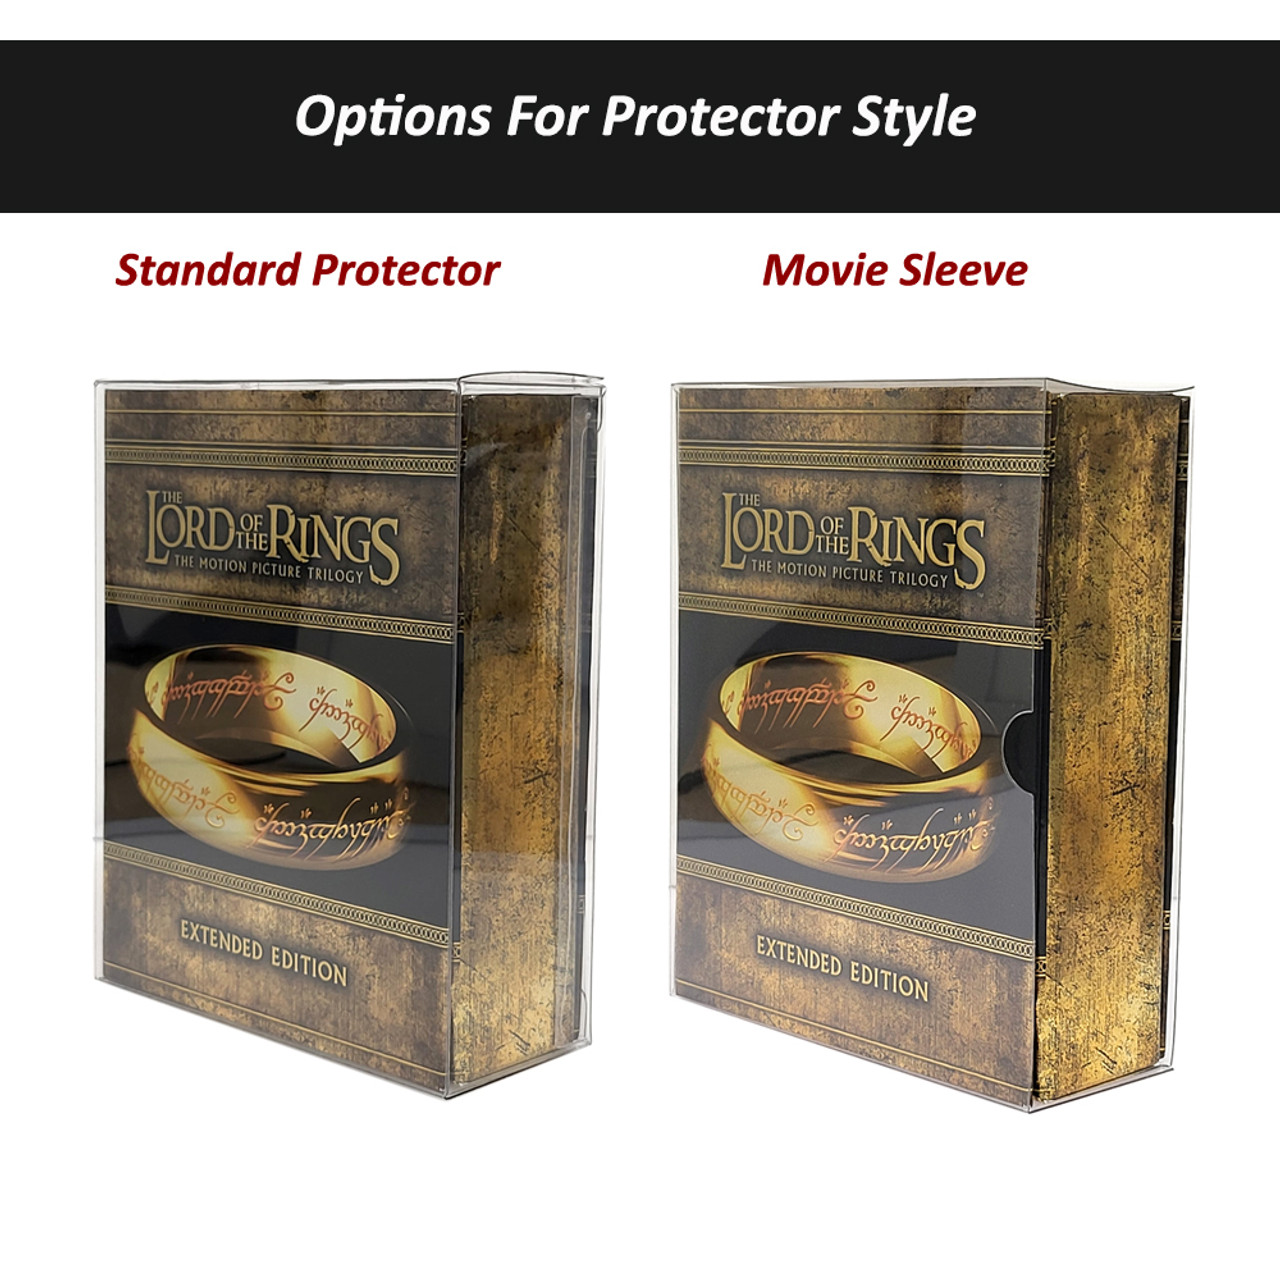 Protector For Possessor VHS